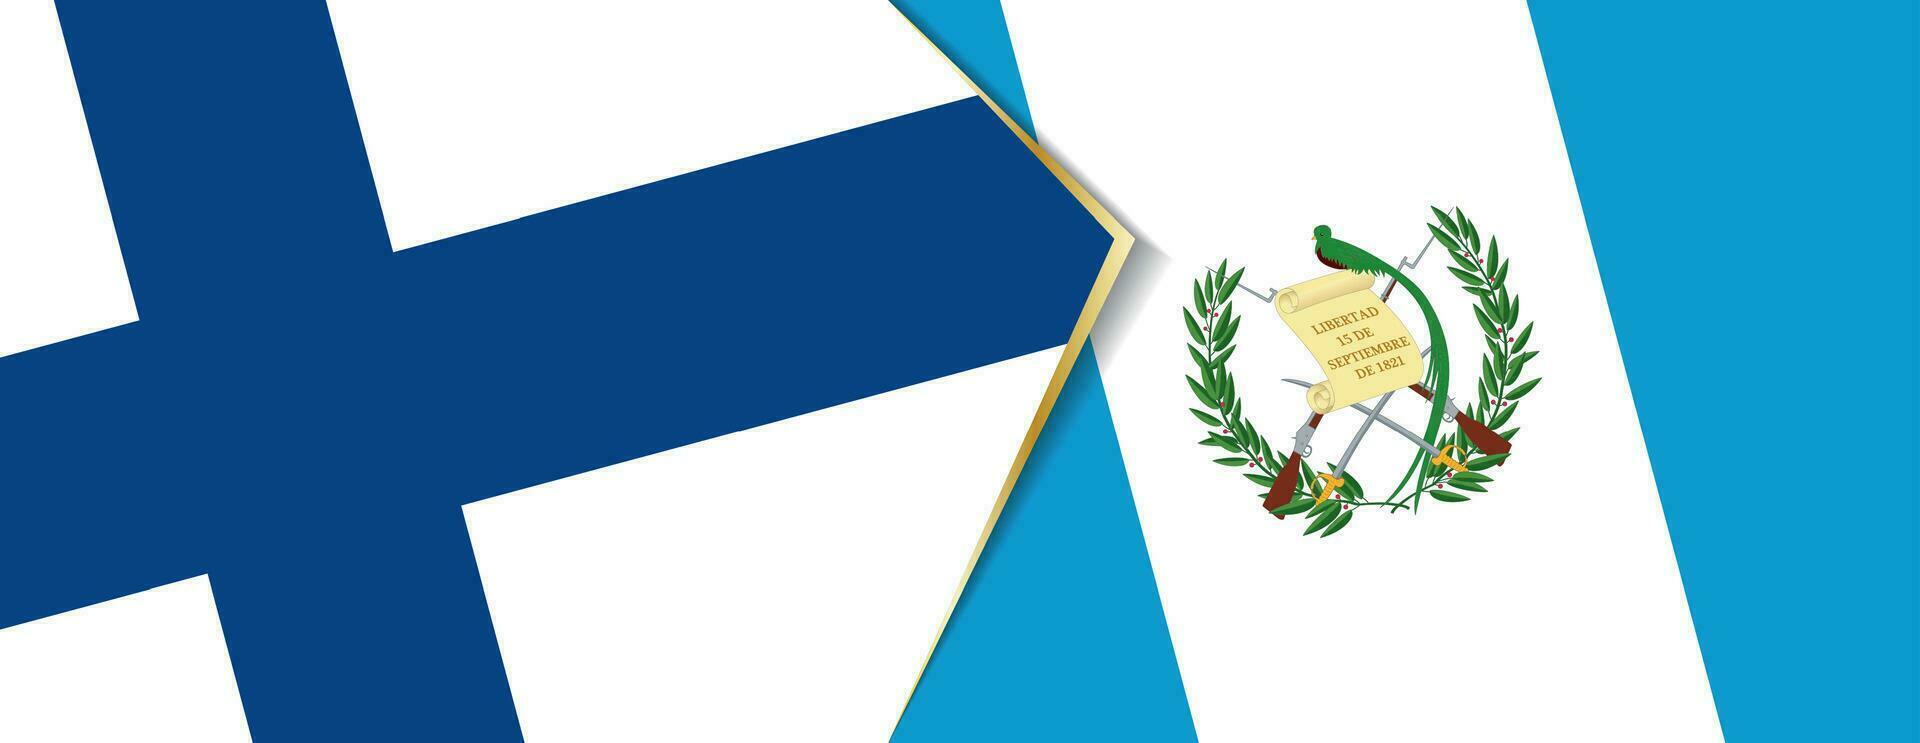 Finlândia e Guatemala bandeiras, dois vetor bandeiras.